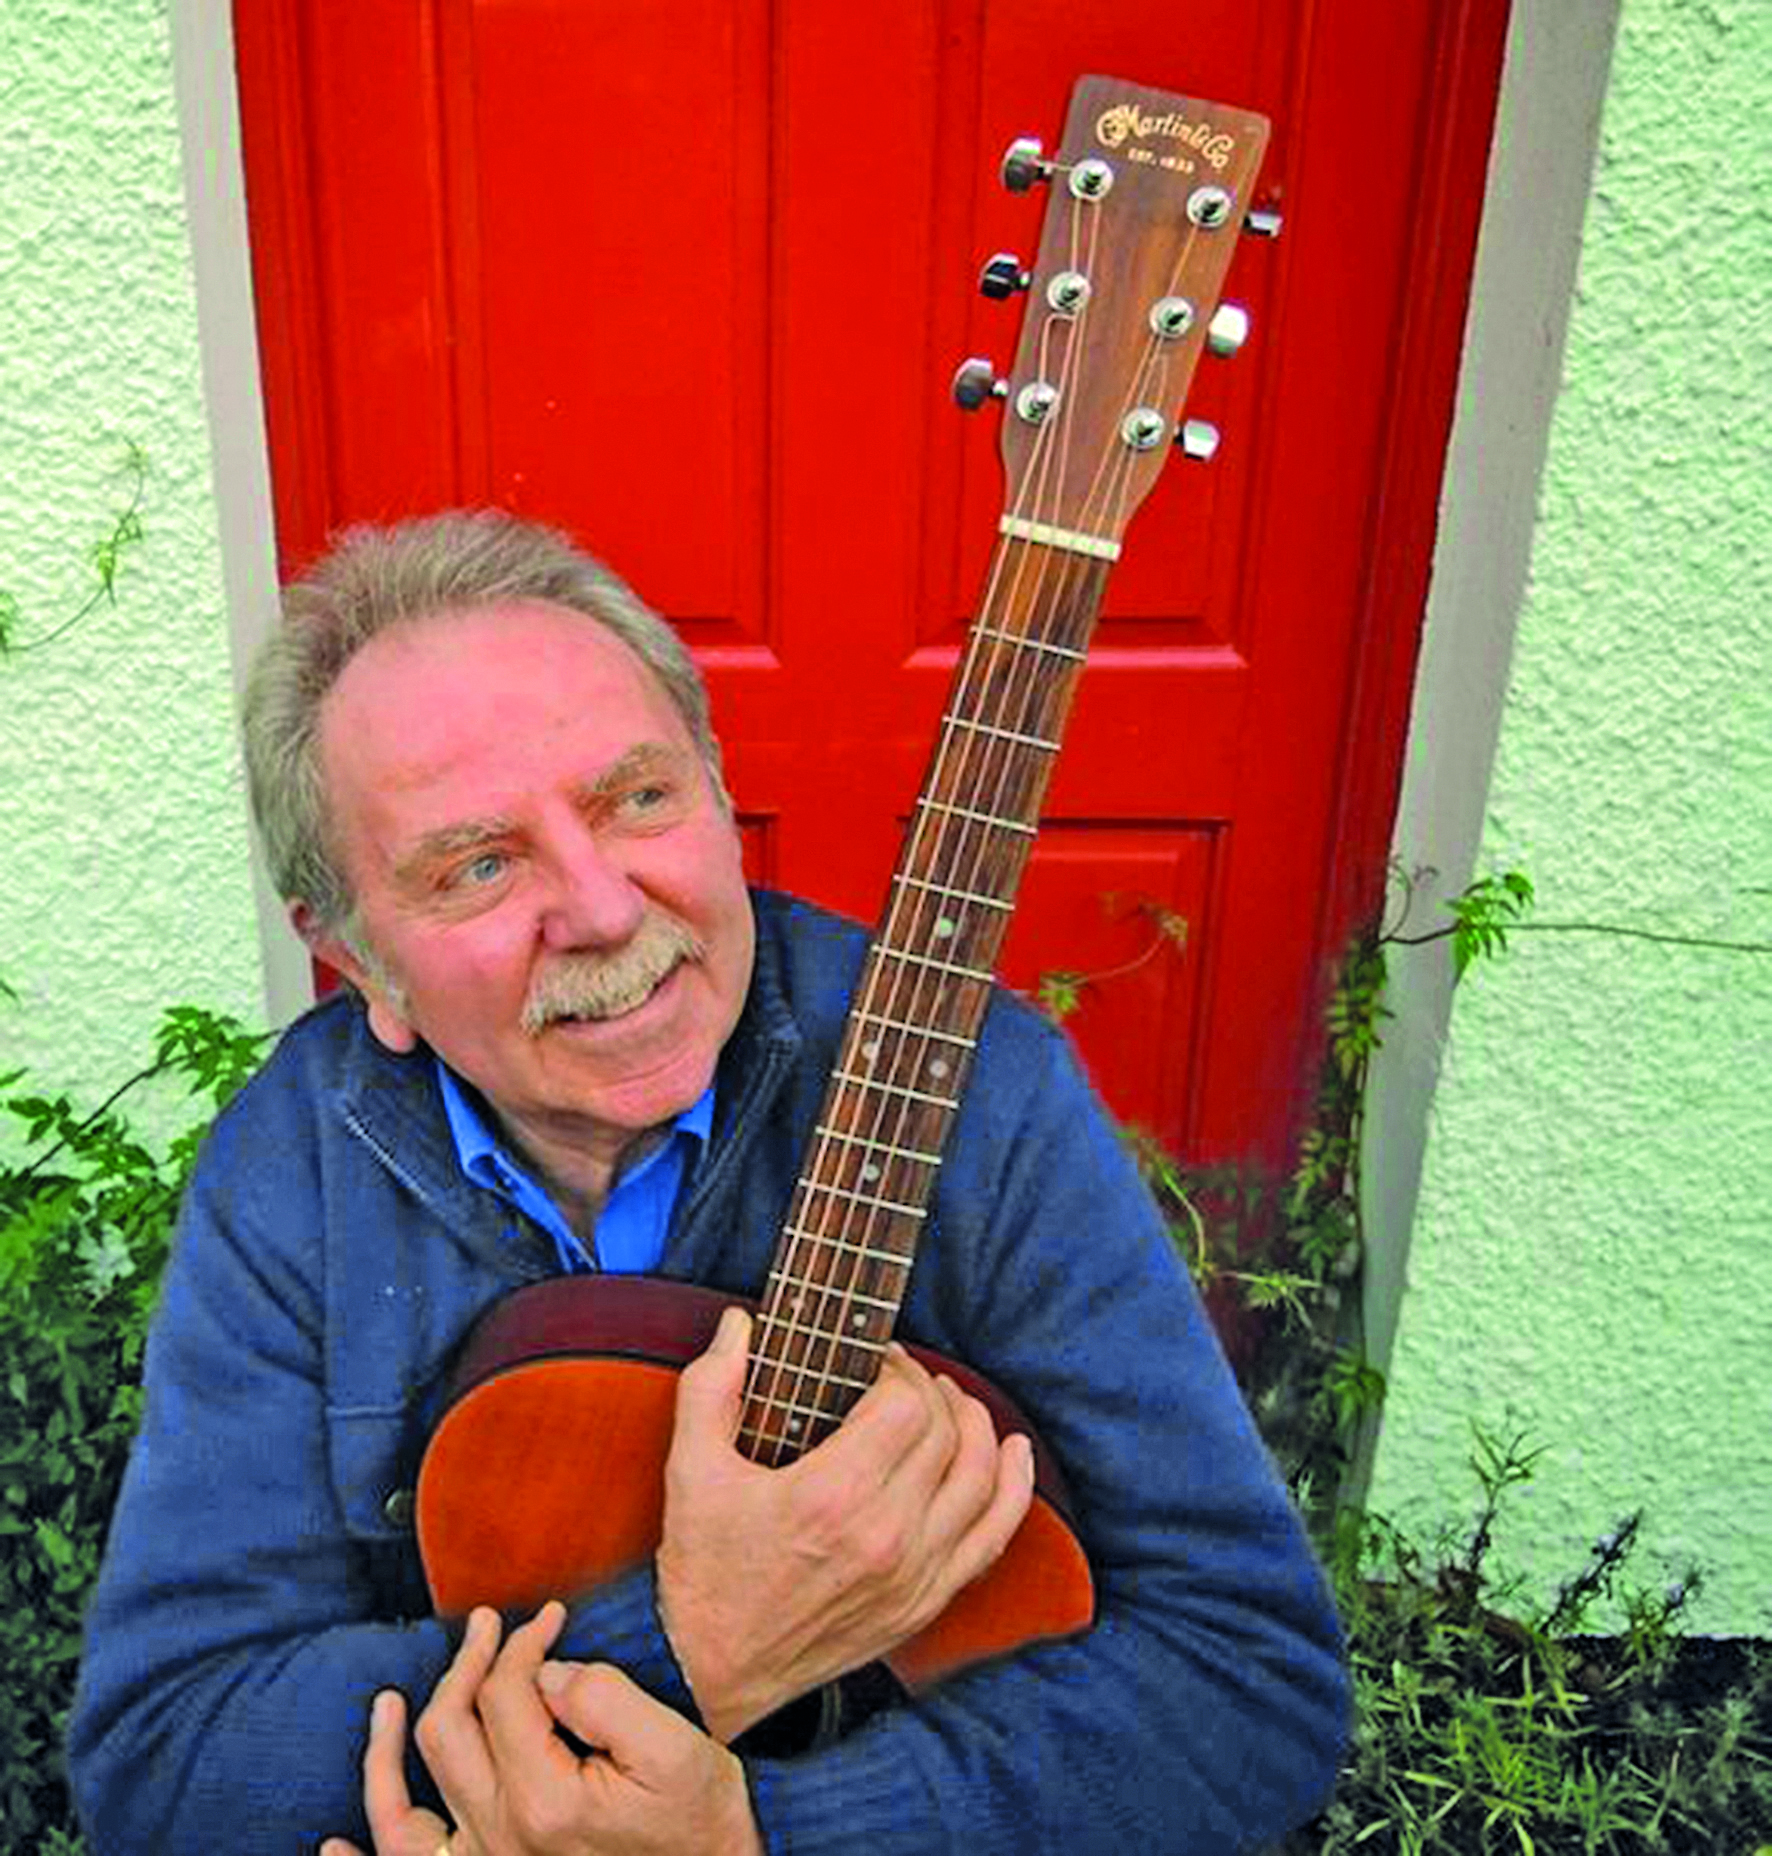 Musik aus Irland, die verzaubert